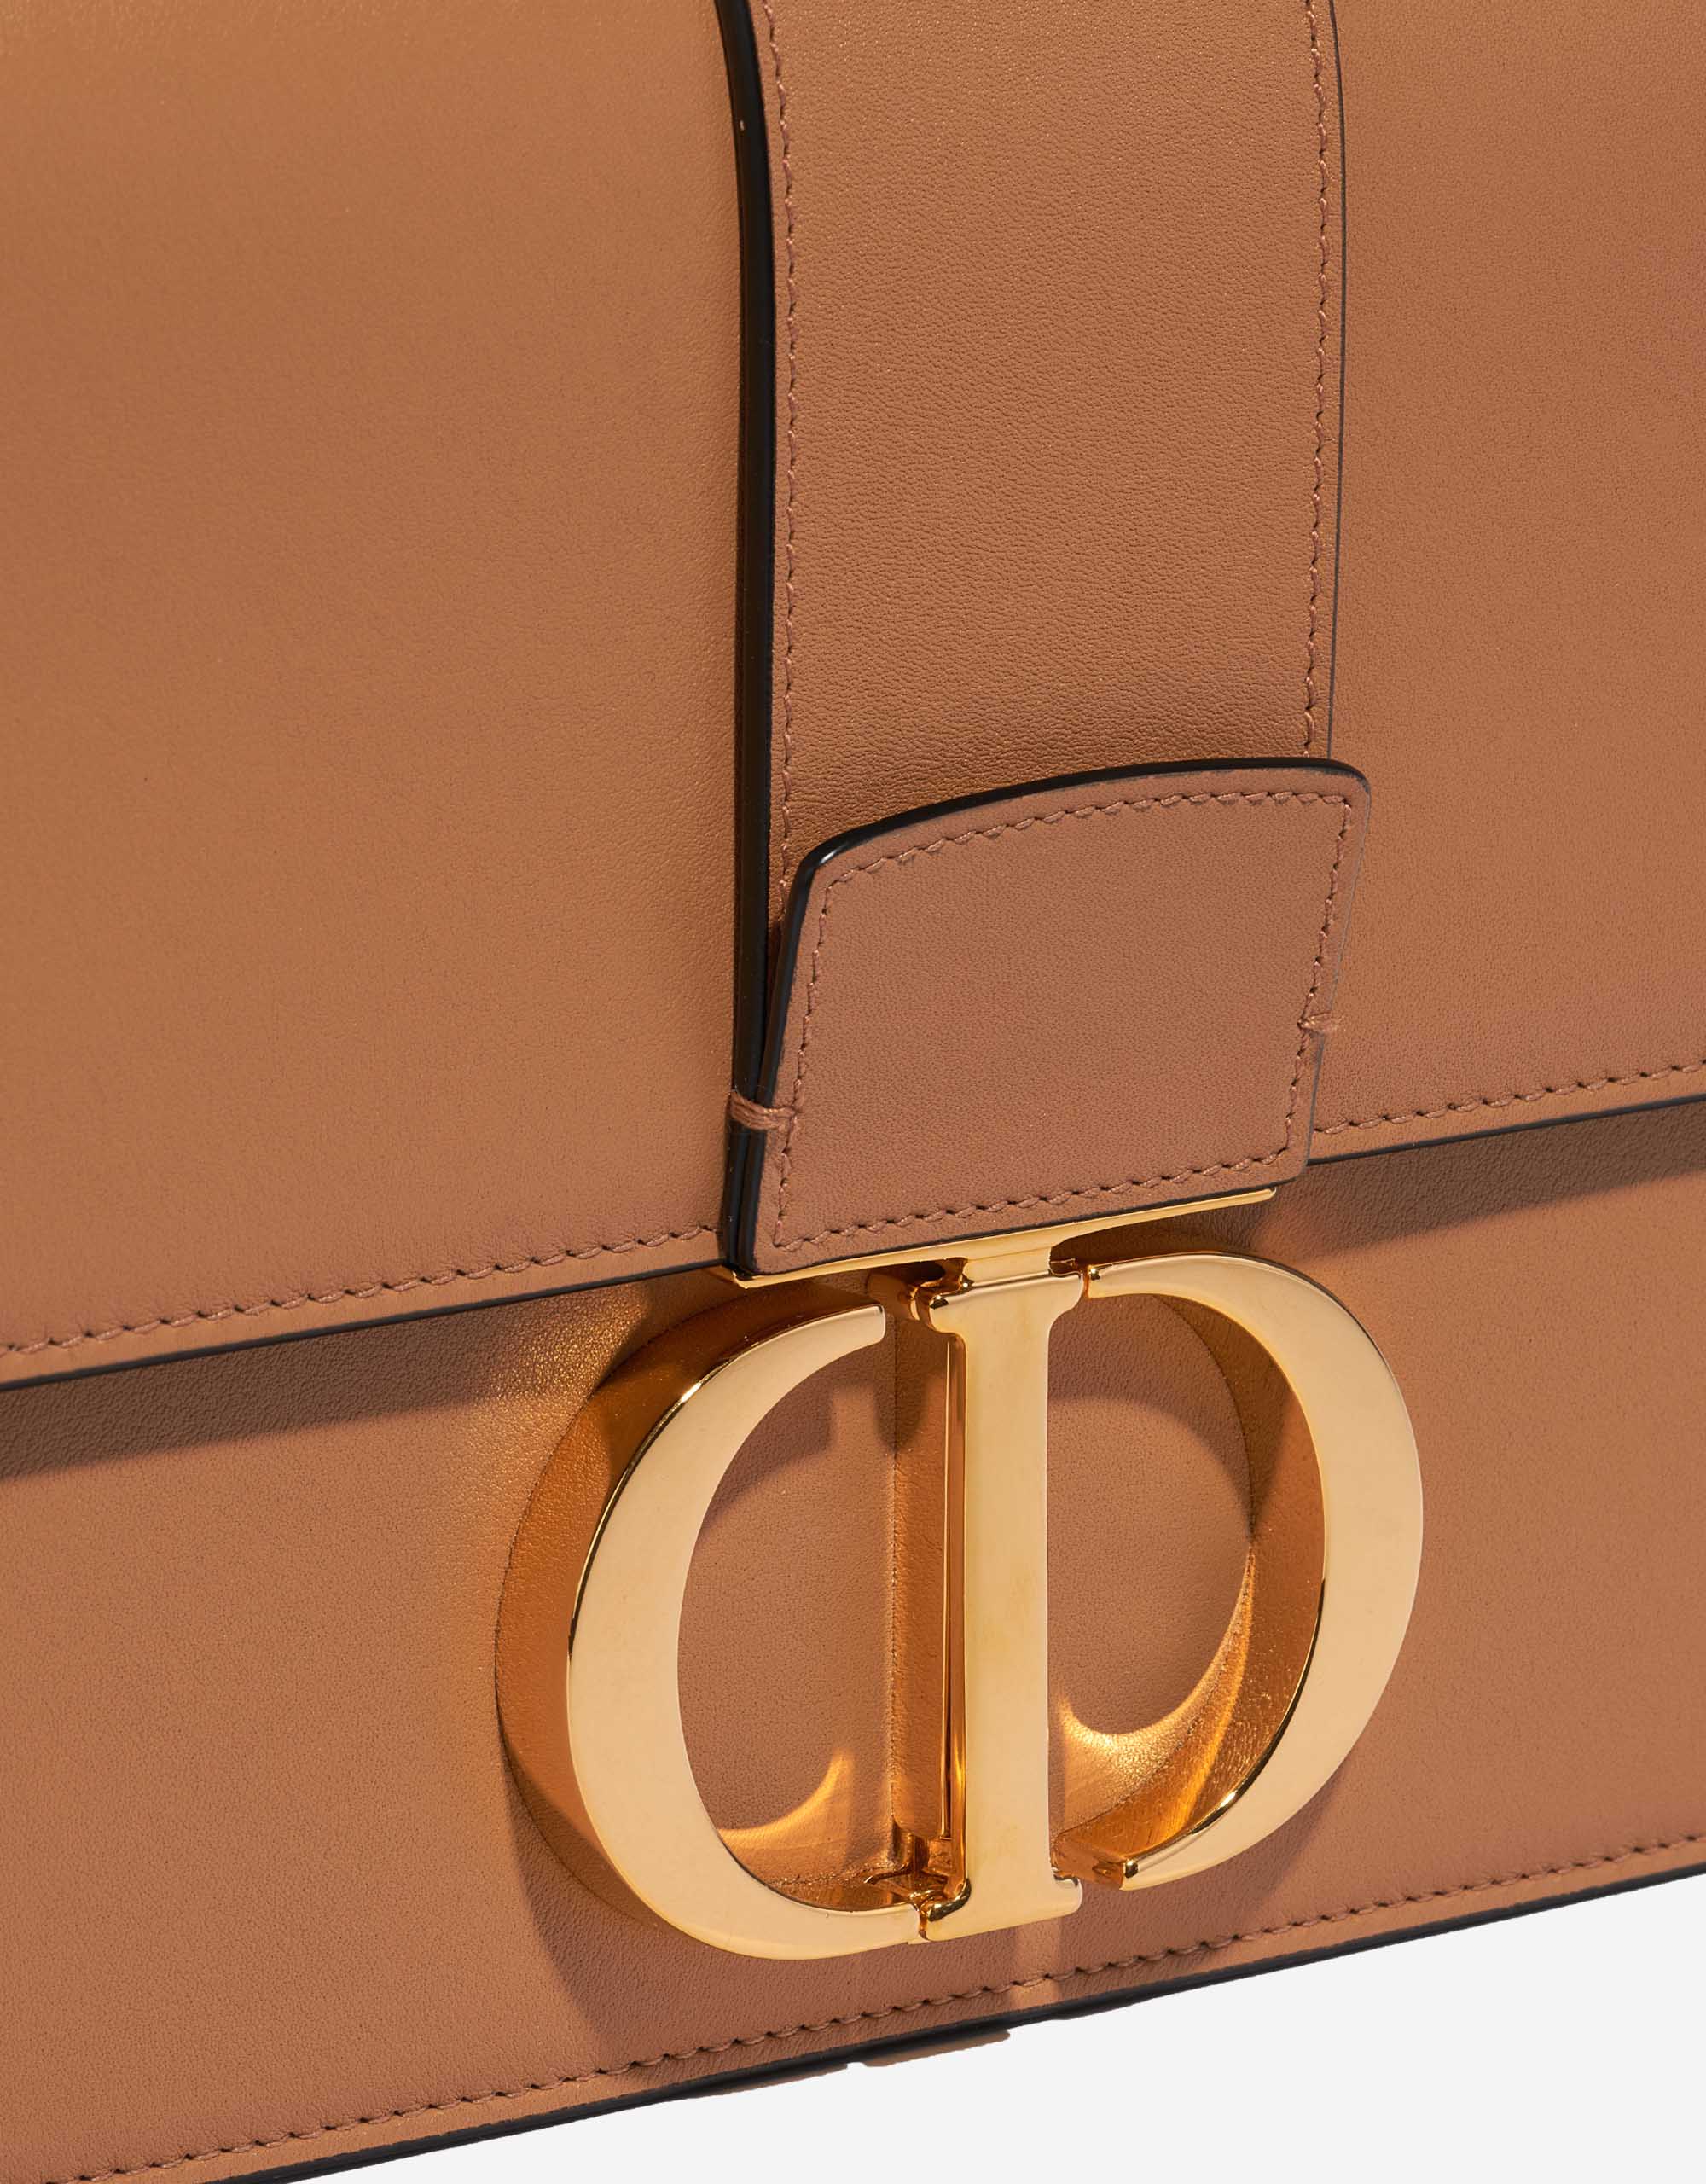 Sac Dior d'occasion 30 Montaigne Veau Beige Beige, Brown Closing System | Vendez votre sac de créateur sur Saclab.com